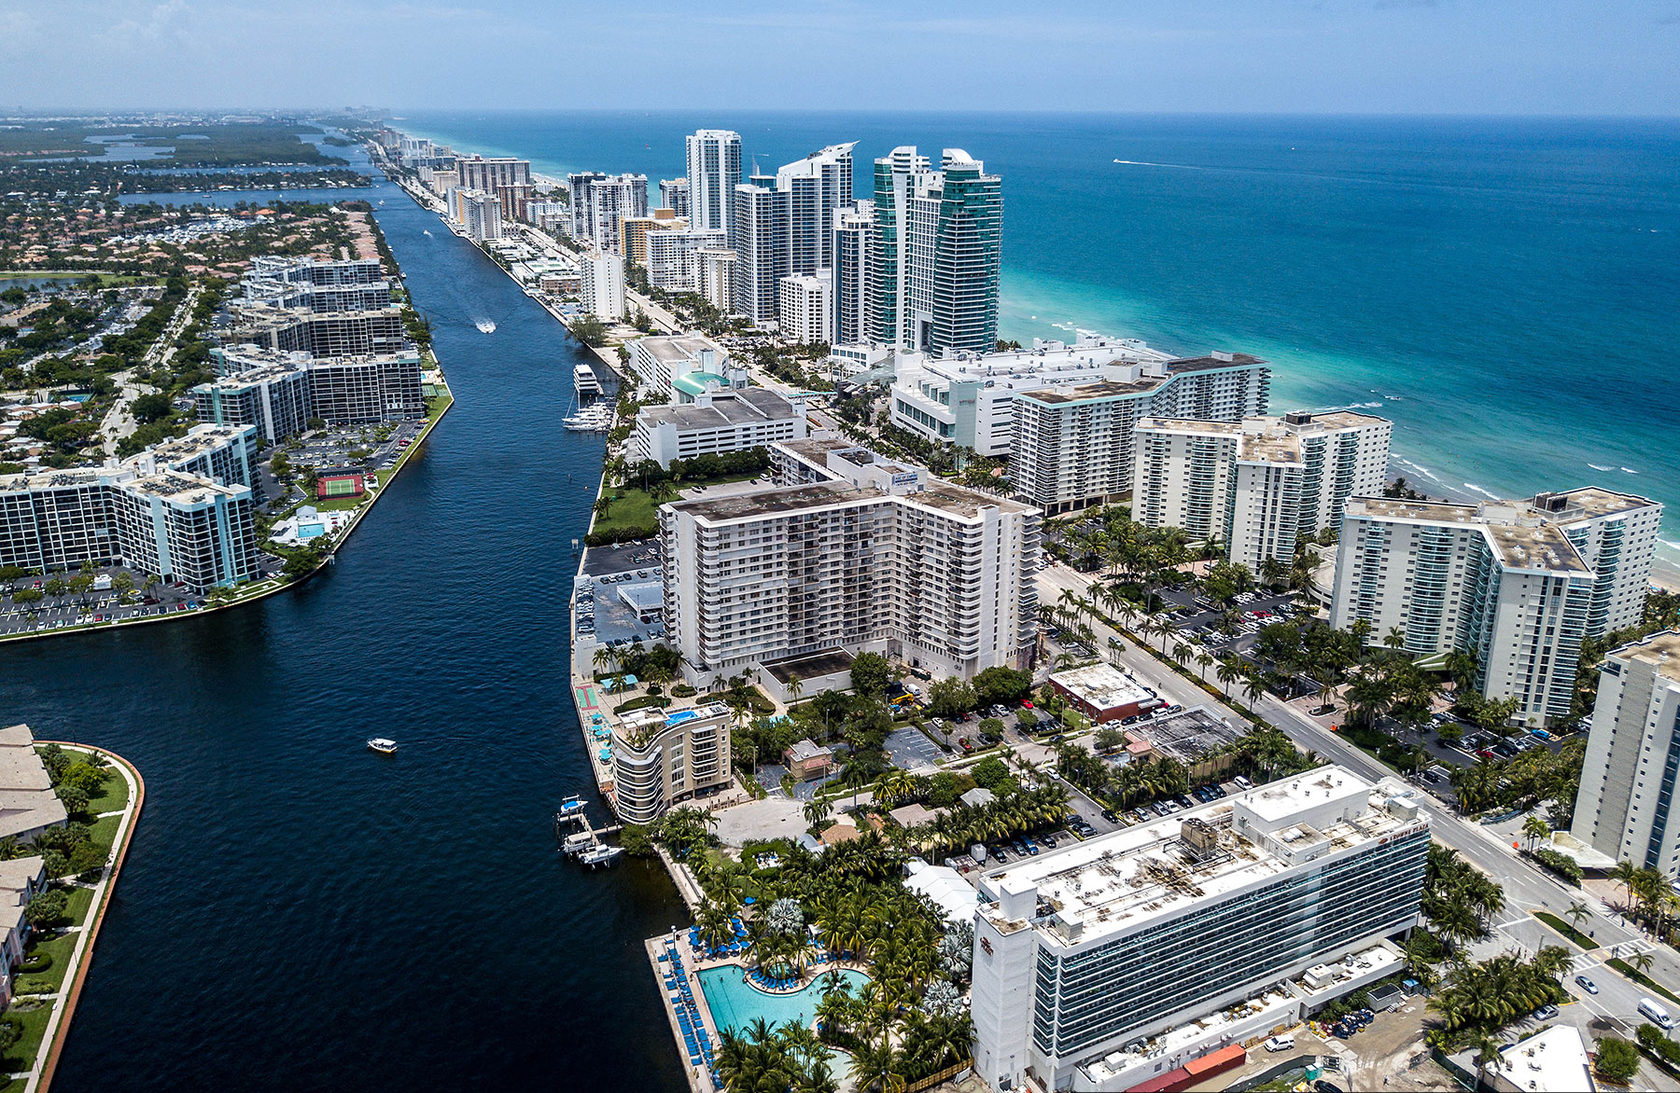 Майами площадь когда европа откроет границы для туристов 2021